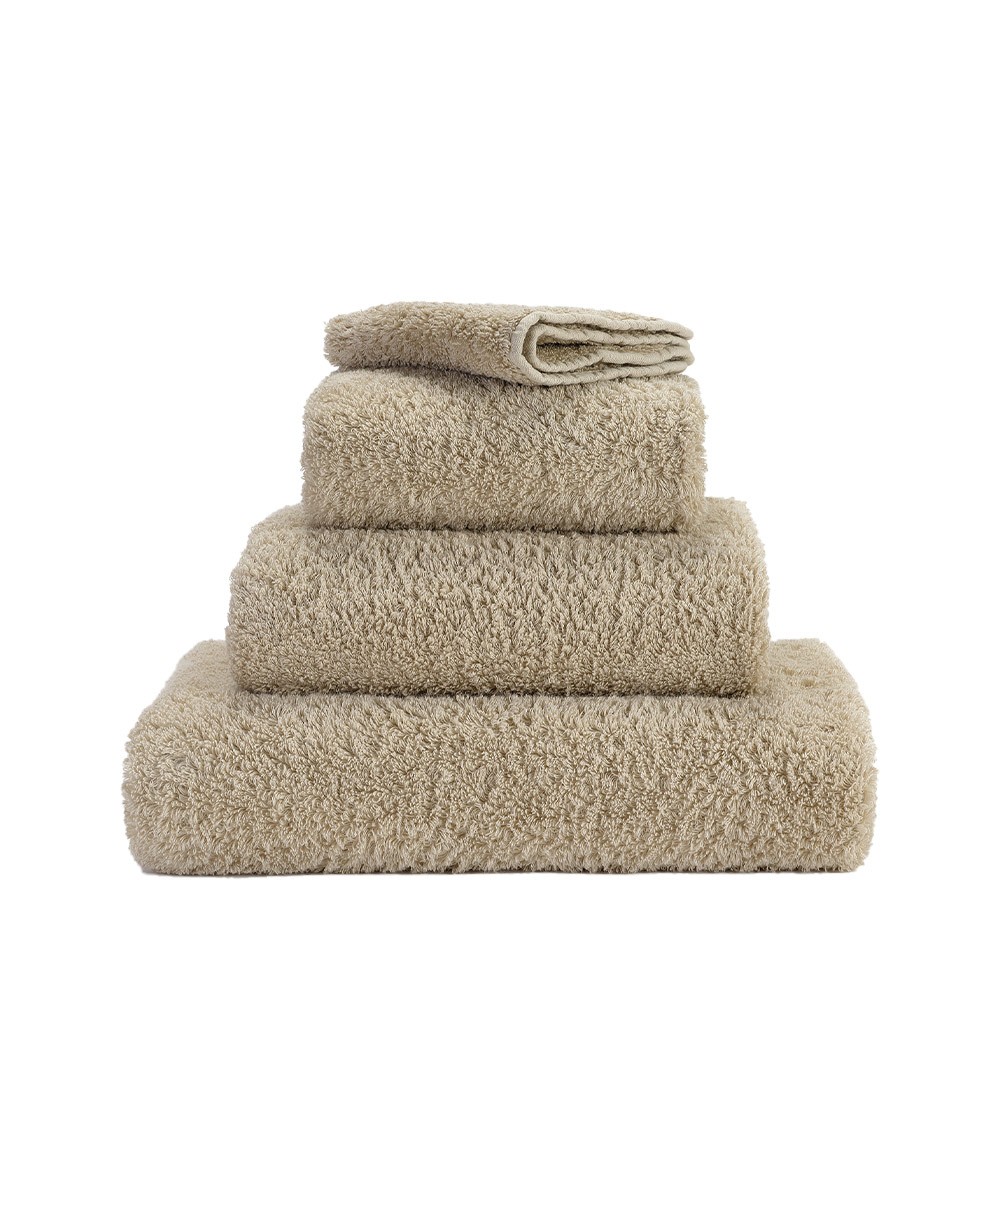 Produktbild des Handtuch Super Pile aus ägyptischer Baumwolle der Marke Abyss & Habidecor im RAUM concept store